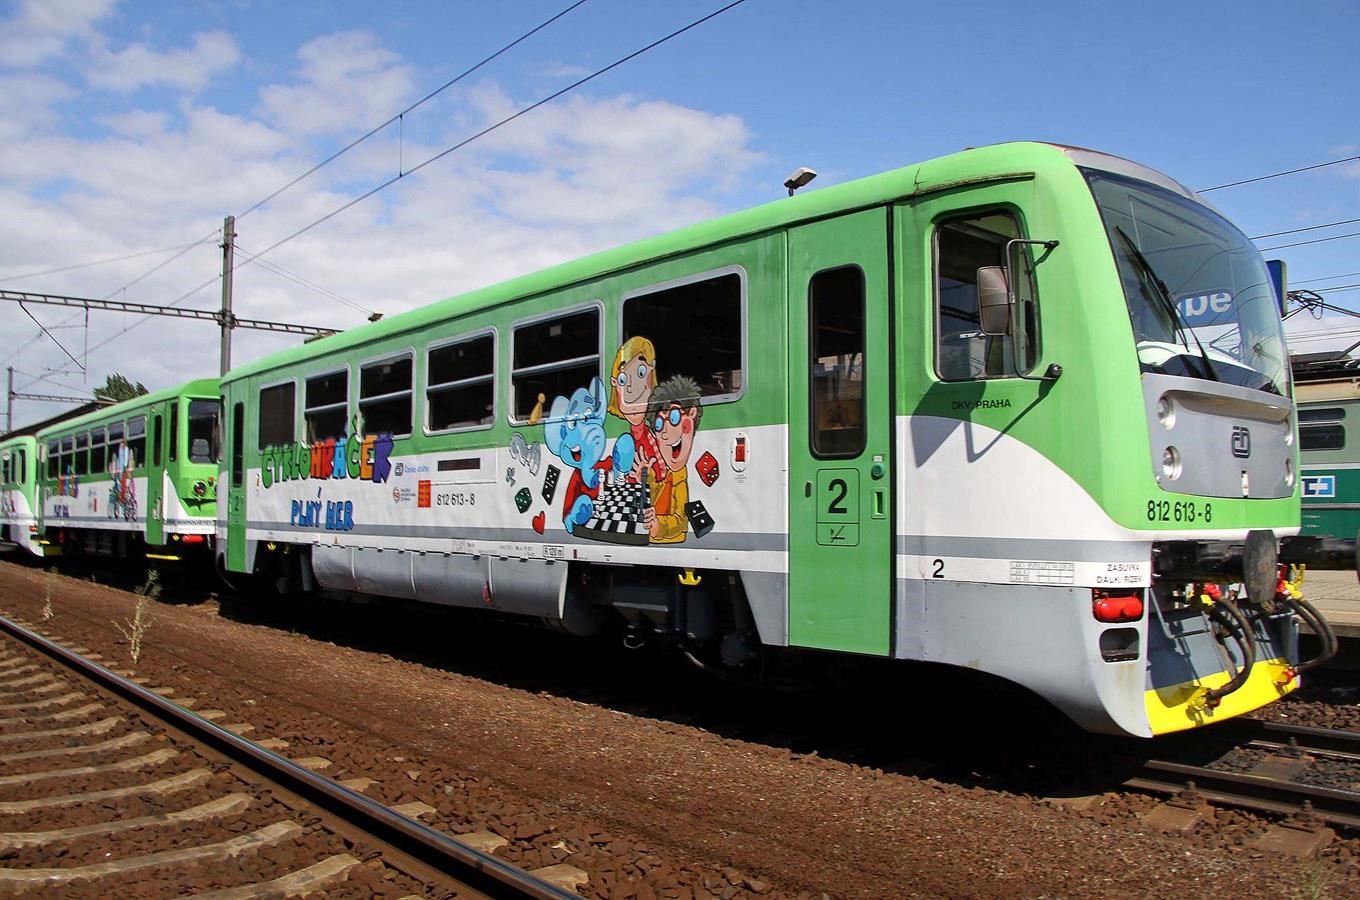 Speciální vlak Cyklohráček upravený pro děti vyjede v sobotu letos poprvé